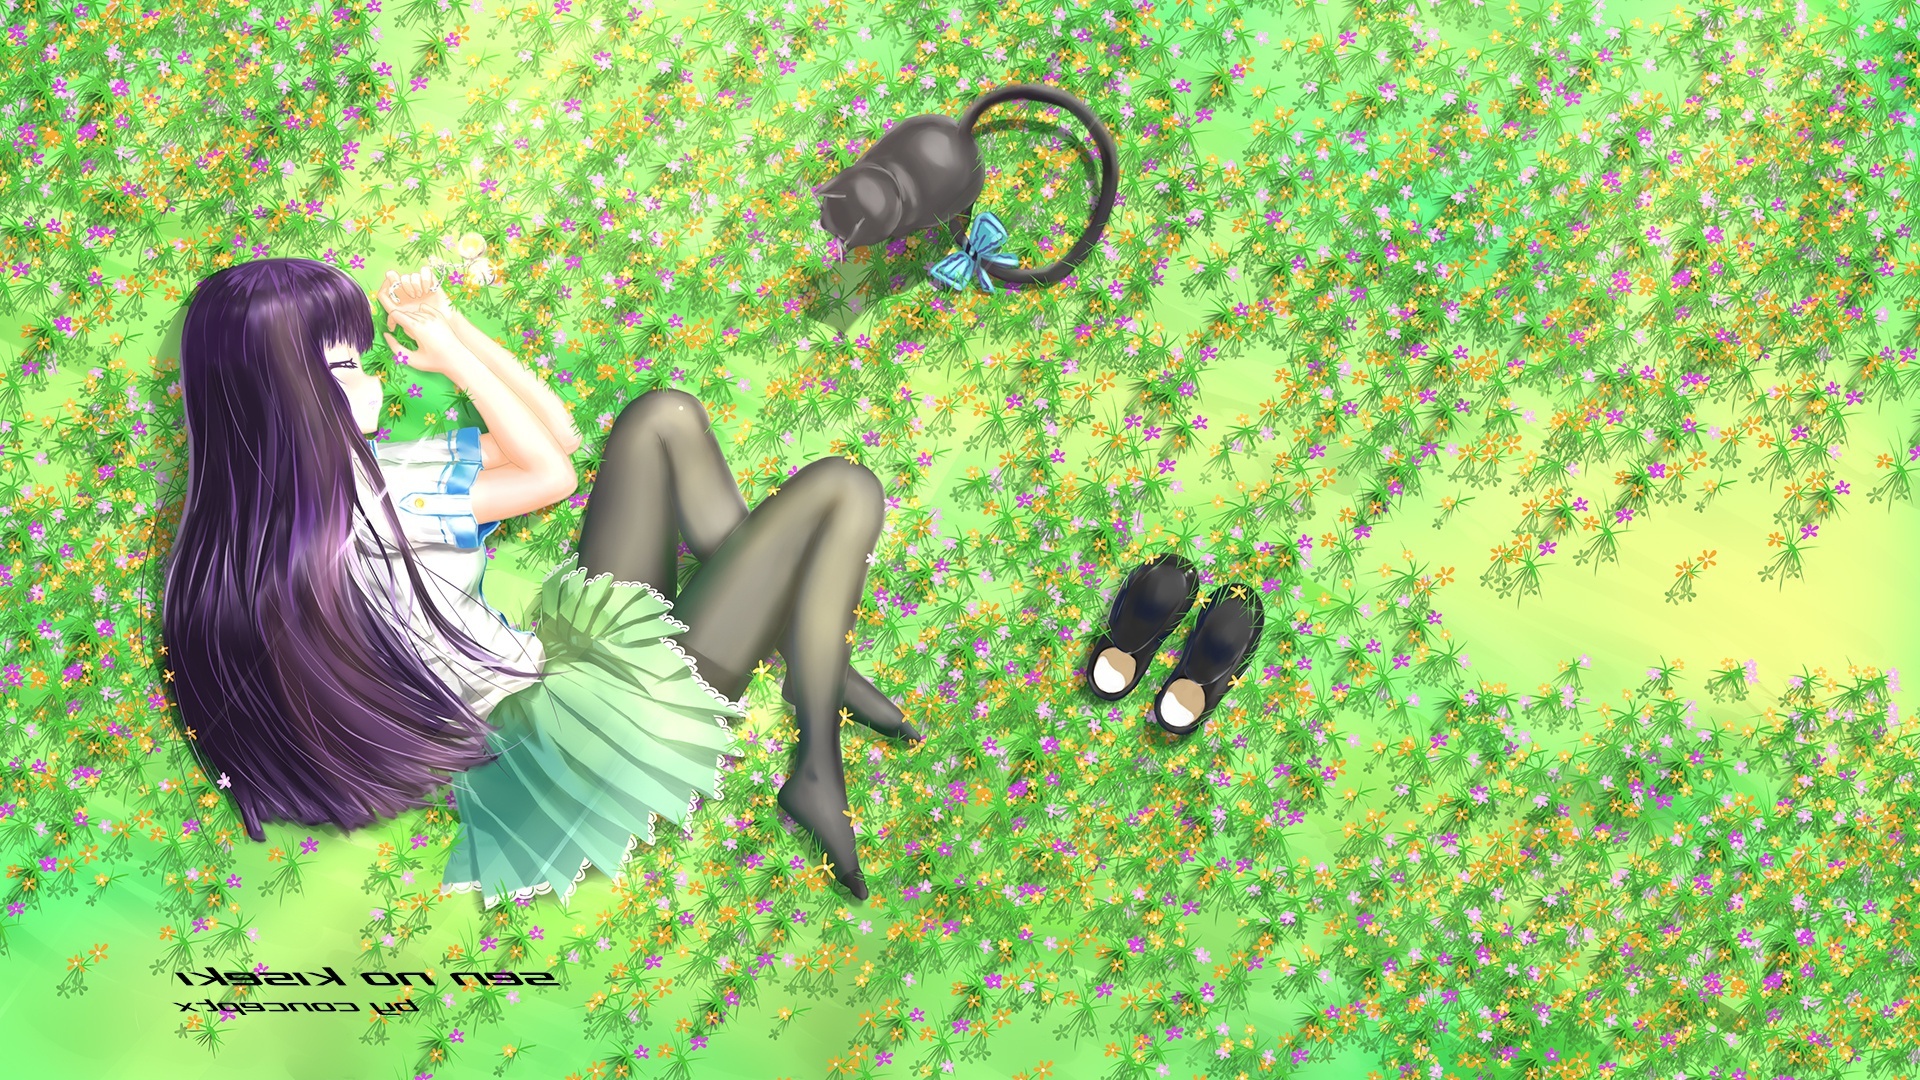 Anime Girl Lying In Grass